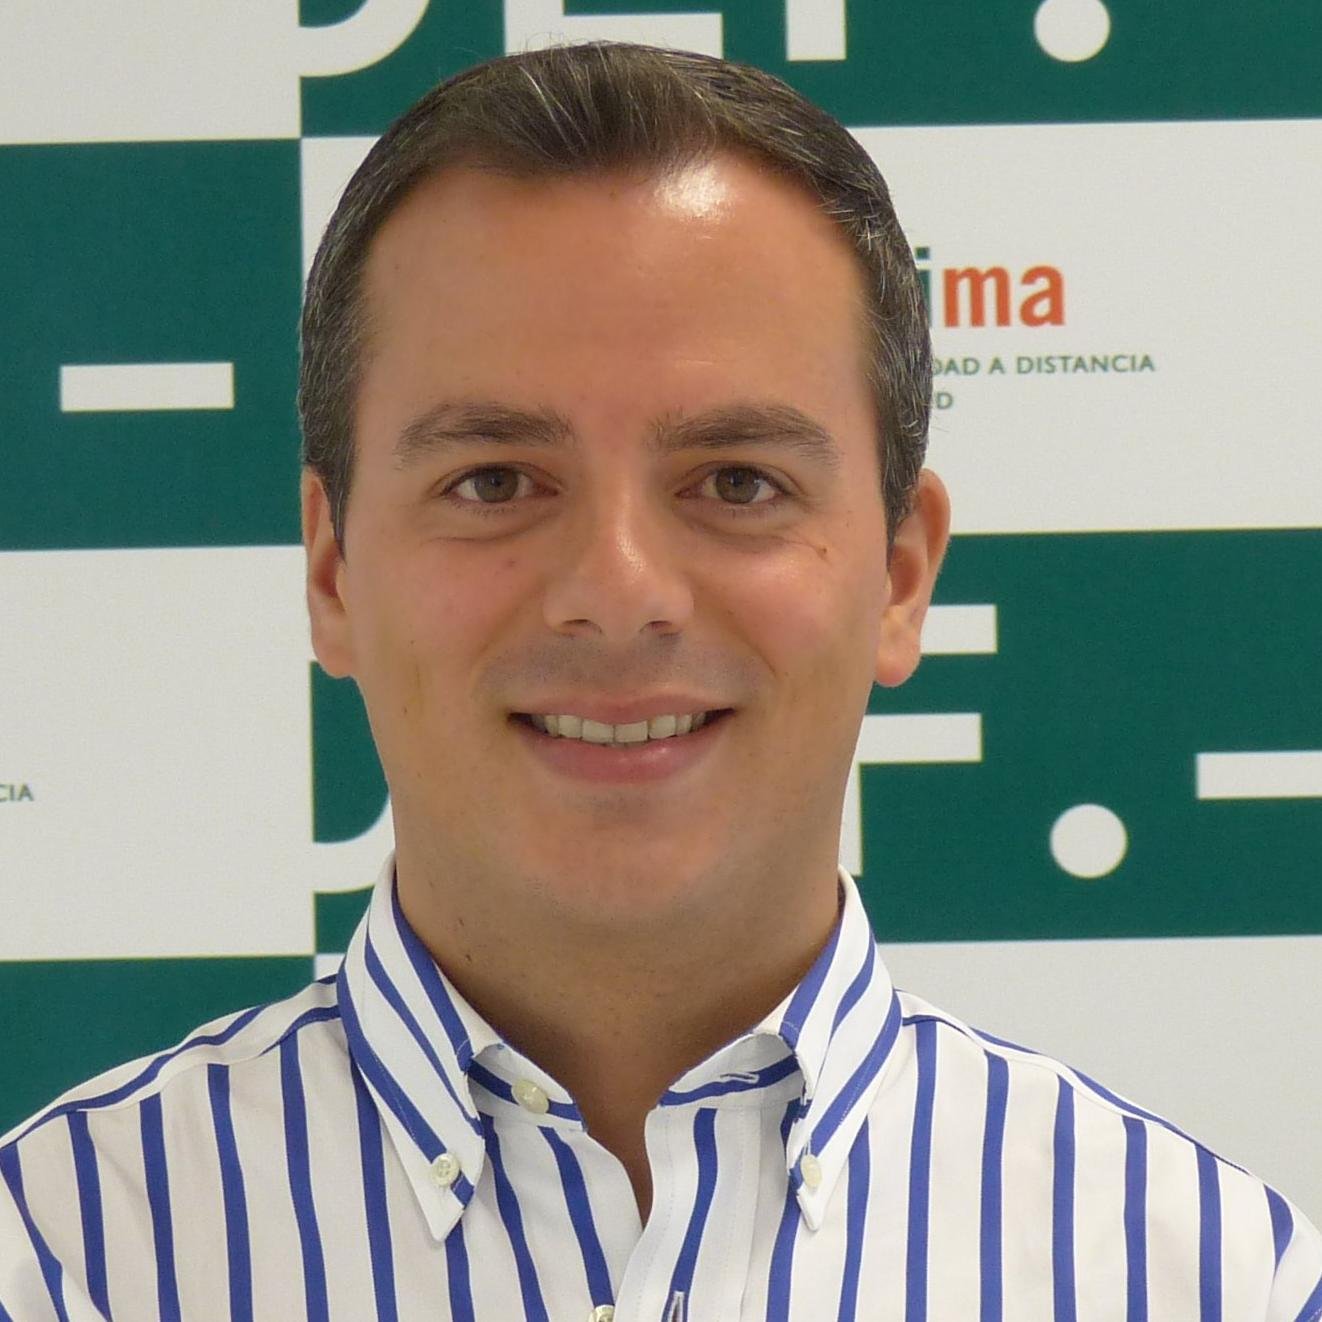 Profesor del Grado en Ingeniería Informática de la Universidad a Distancia de Madrid, @UDIMA